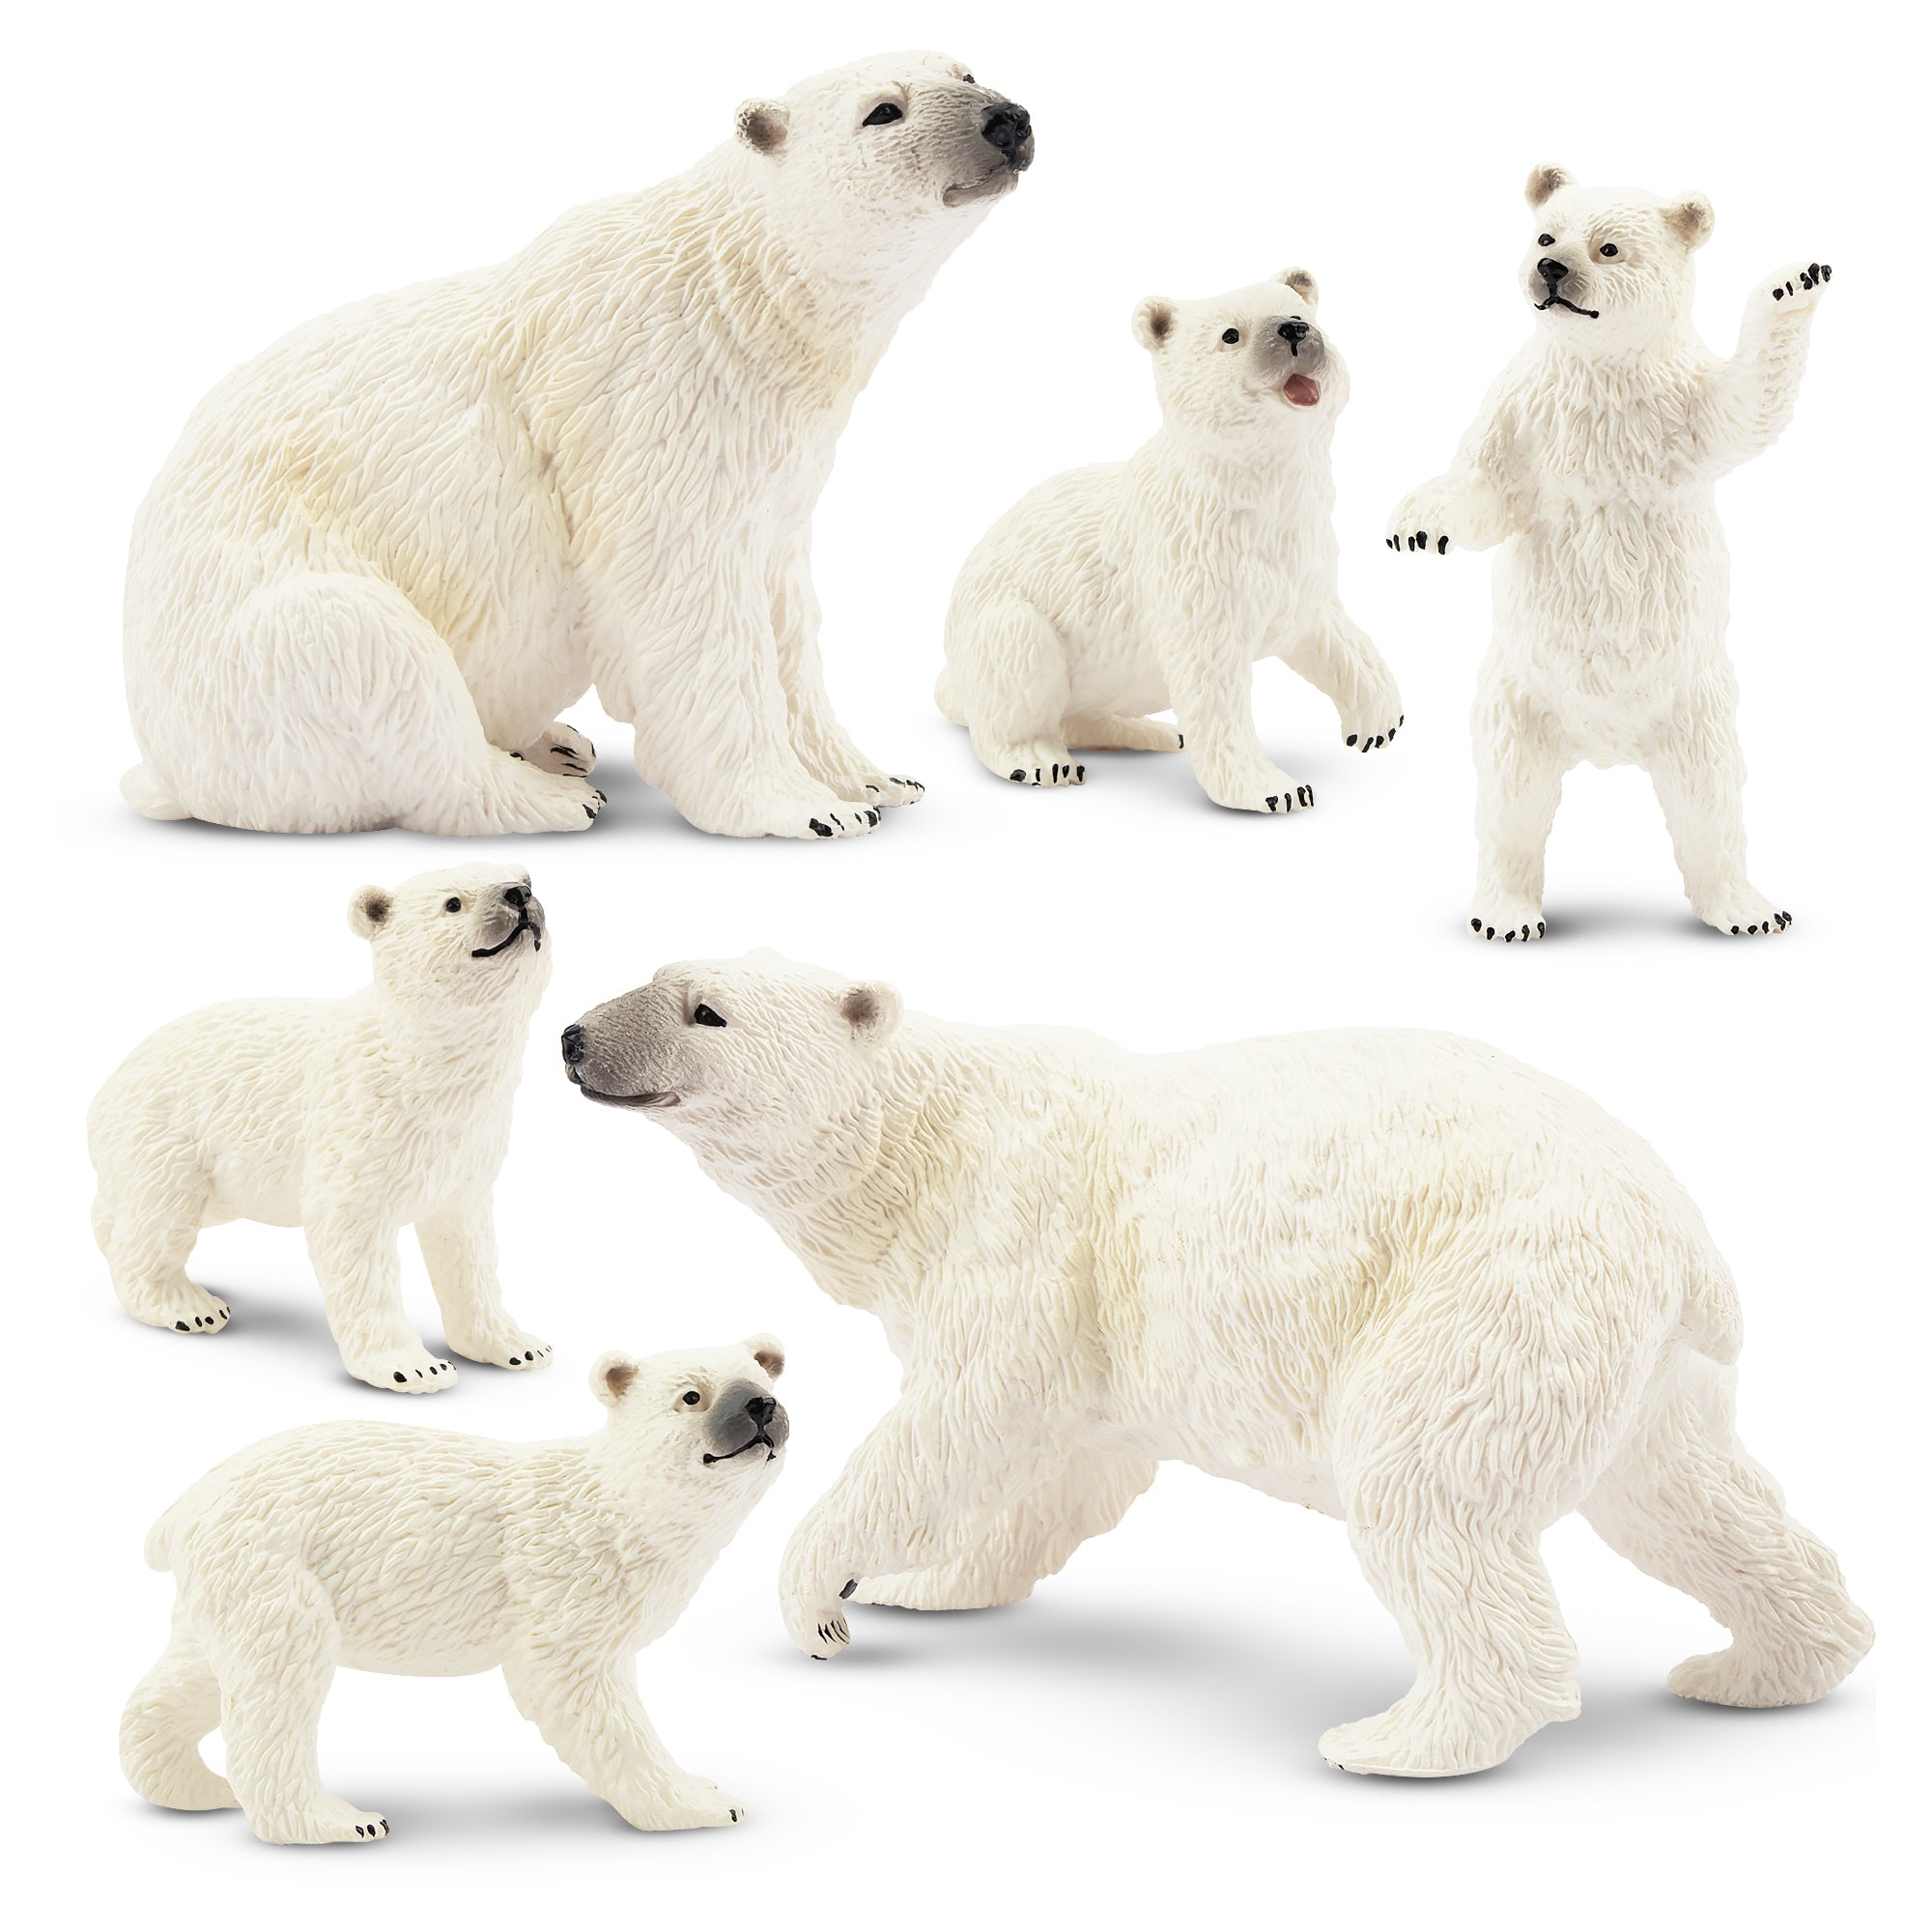 6-Piece Polar Bear Family Figurines Playset with Adult & Baby Polar Bear